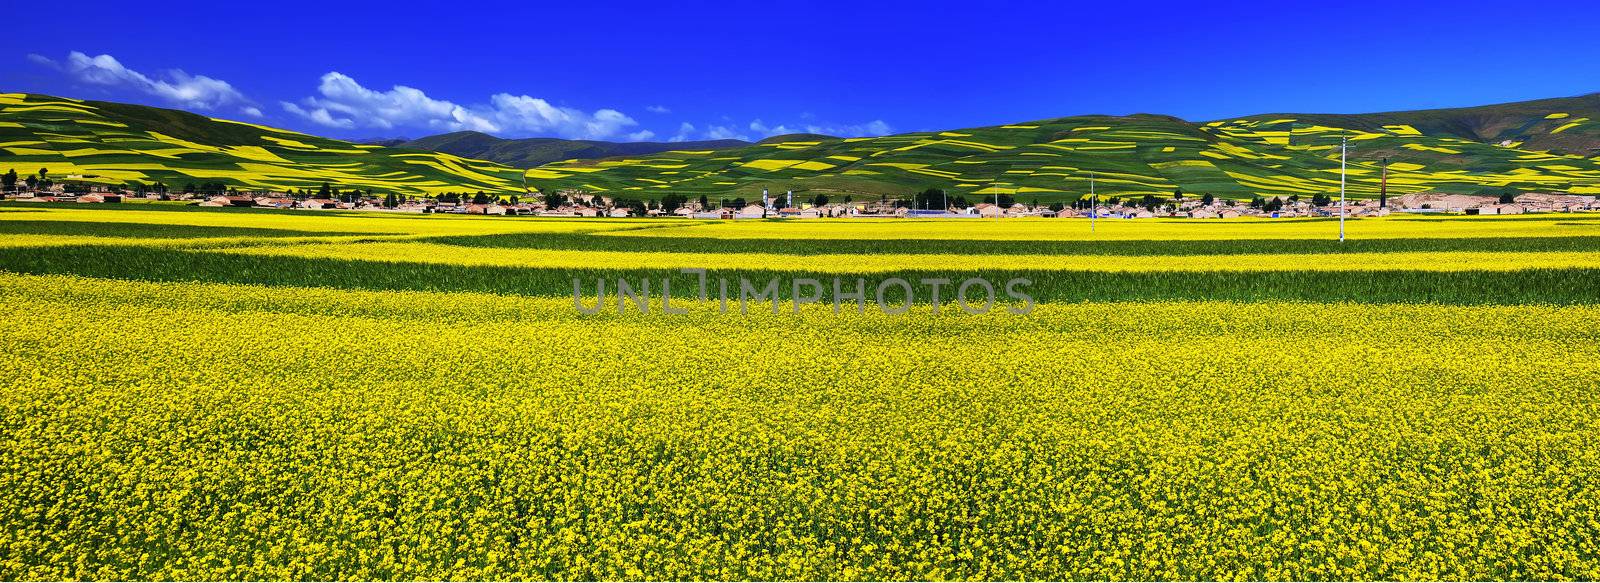 Oil seed rape field in the summer sun  by xfdly5